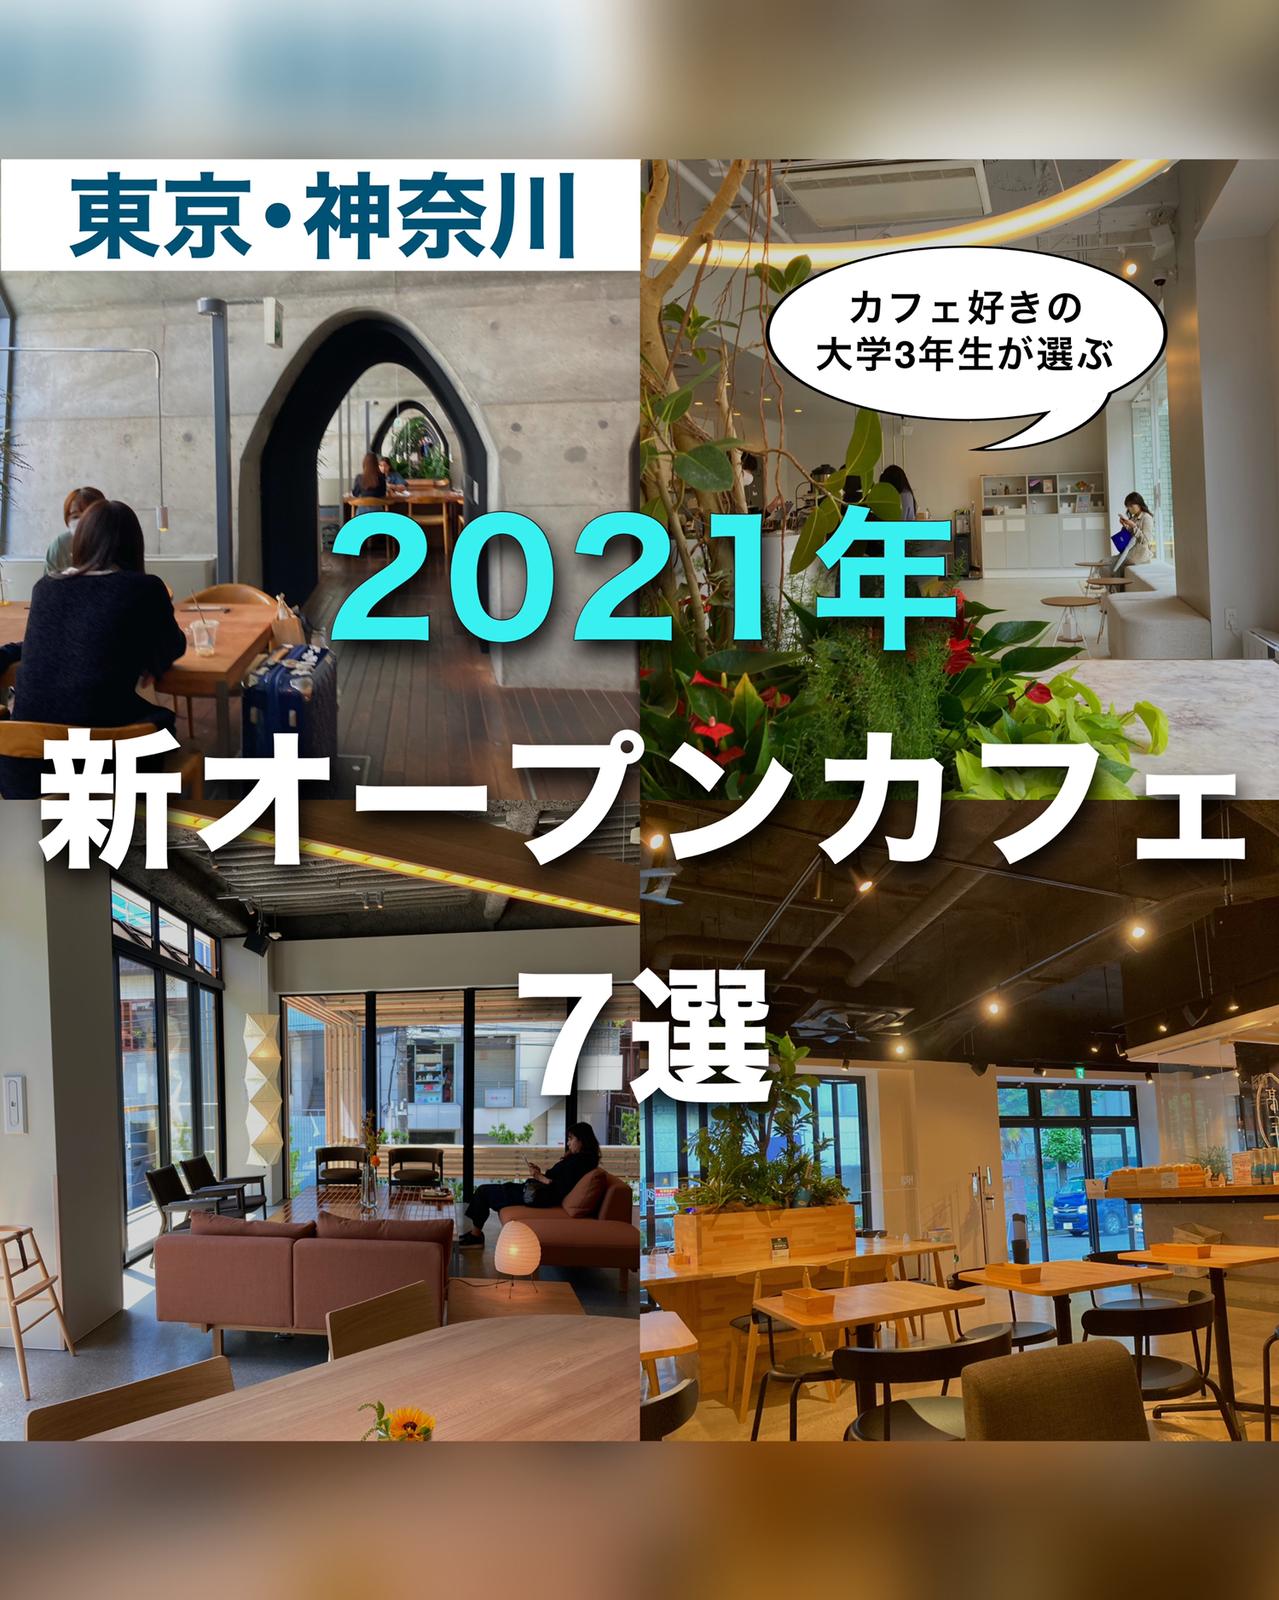 東京 神奈川 21年new Openカフェ7選 ゆき カフェ巡り 東京 神奈川が投稿したフォトブック Sharee